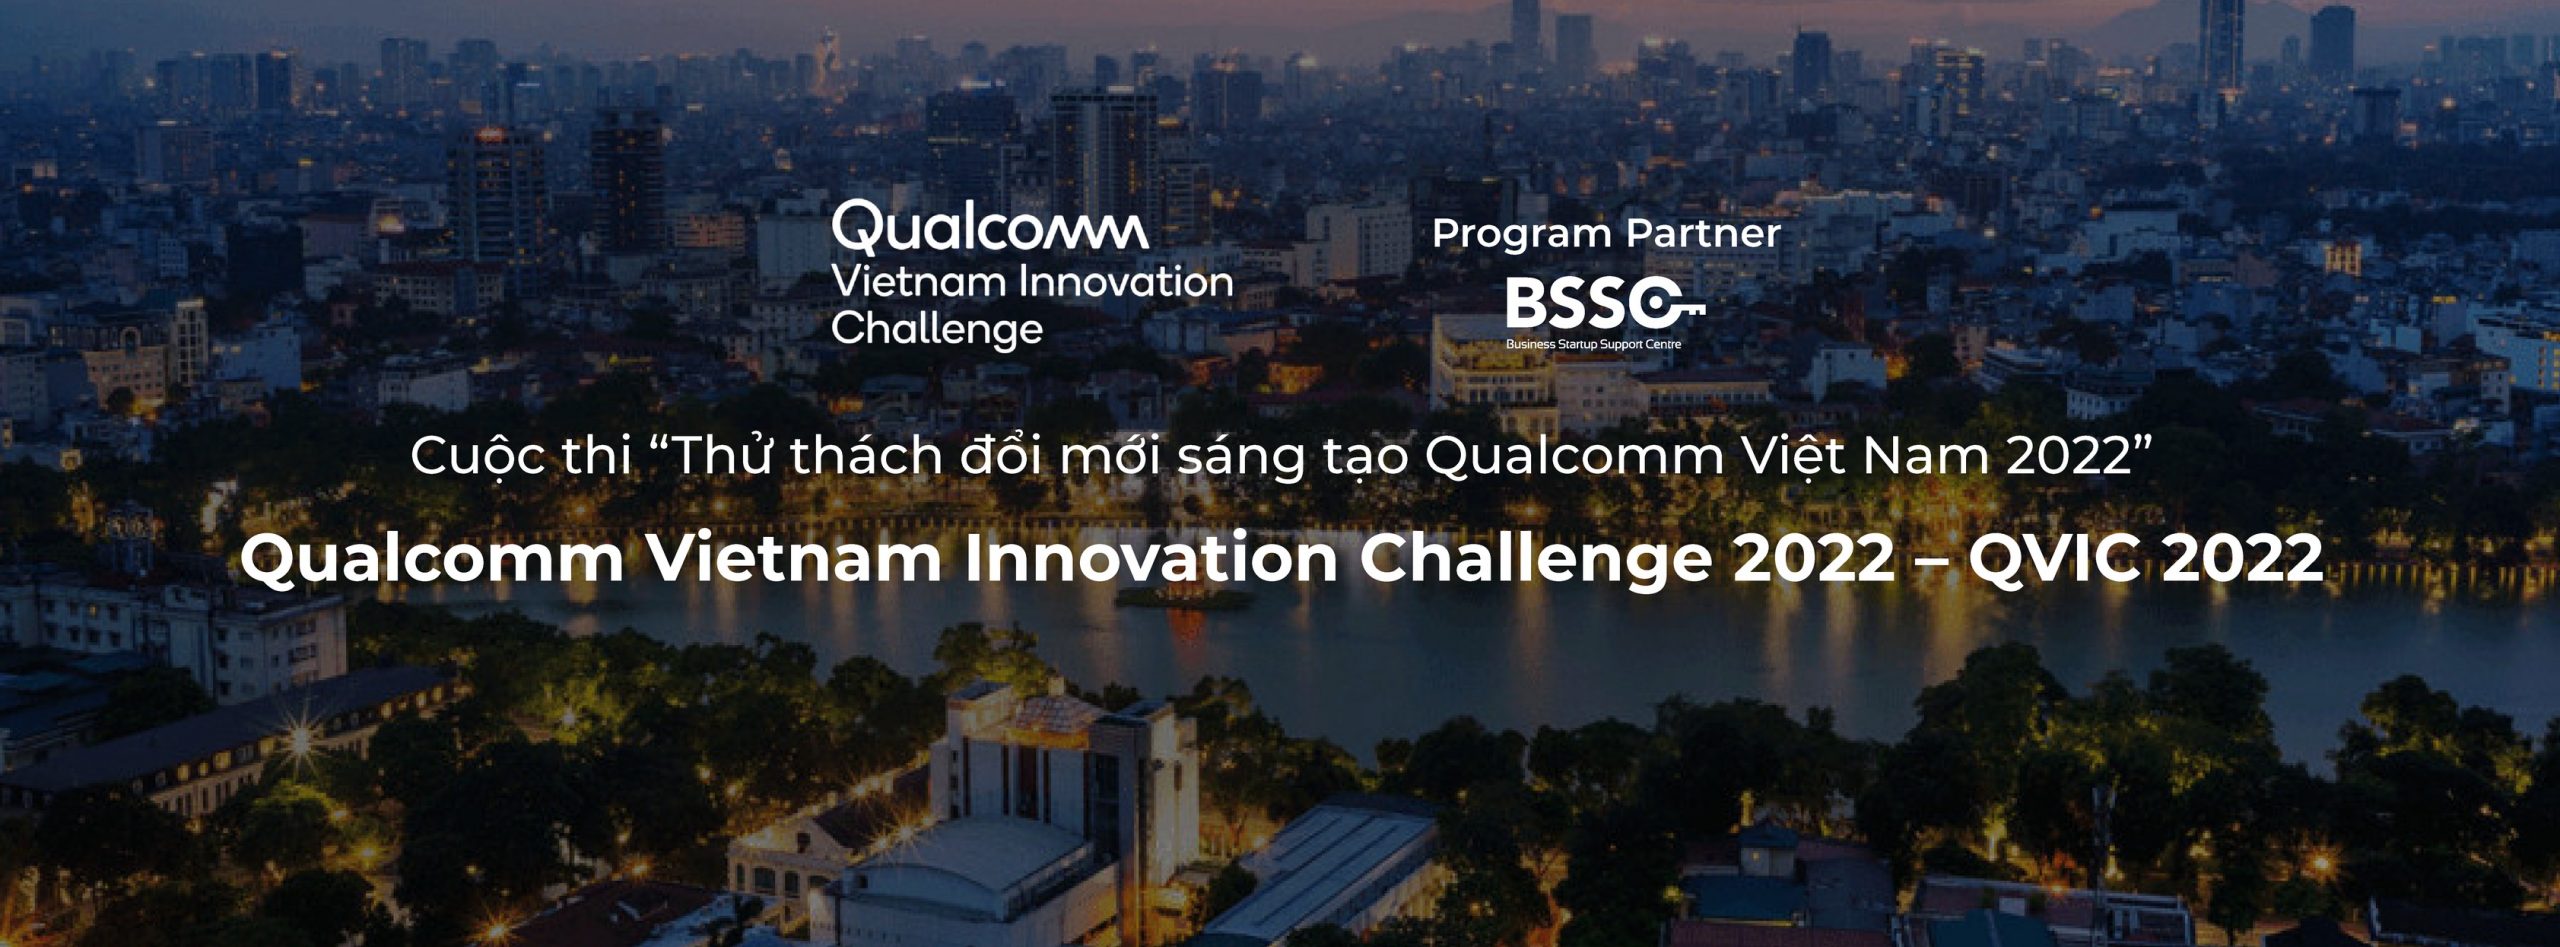 Qualcomm công bố danh sách các đội được tuyển chọn tham gia Thử thách đổi mới sáng tạo Qualcomm Việt Nam 2022